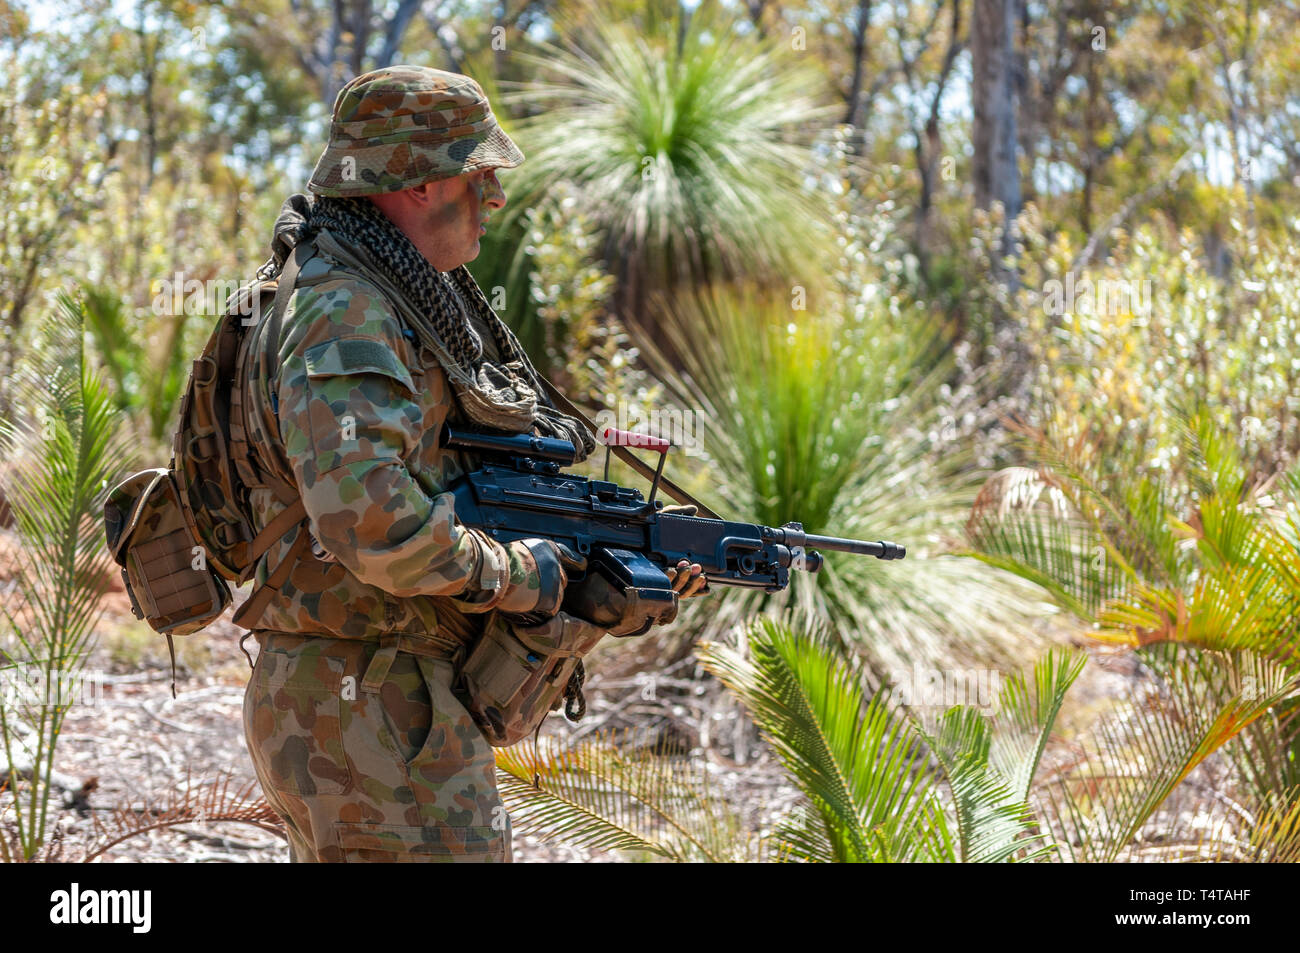 Esercito Australiano soldato di riserva su un esercizio con un LSW MAG 58 mitragliatrice, nel bush australiano. Indossa un tipico 'aussie' Slouch cappello. Foto Stock